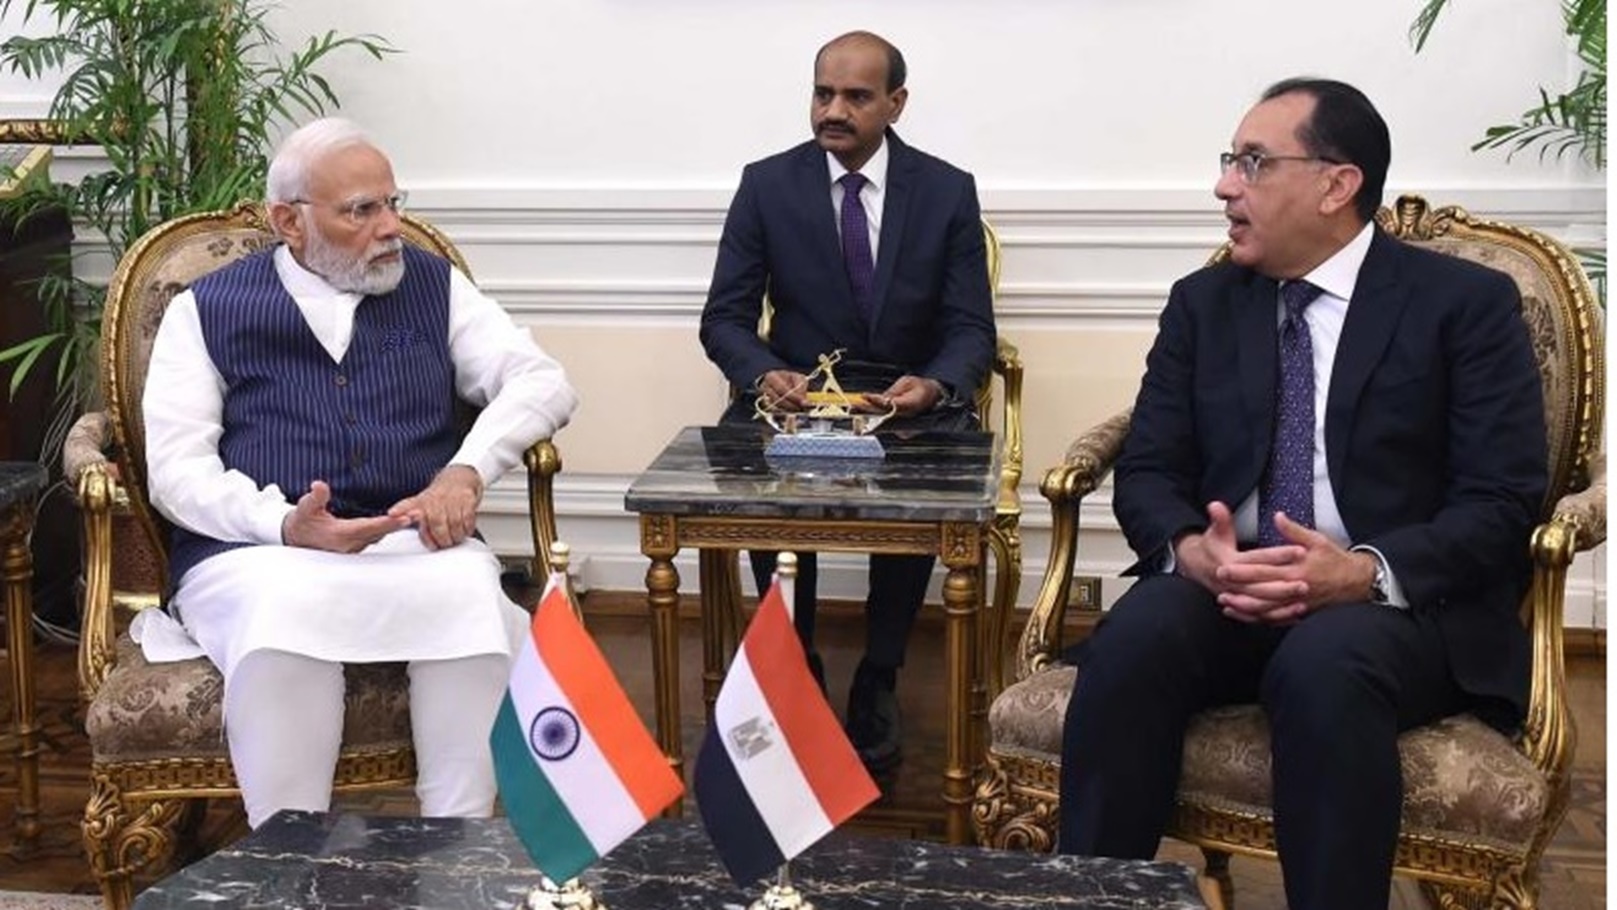 رئيس وزراء الهند مع دكتور مصطفي مدبولي